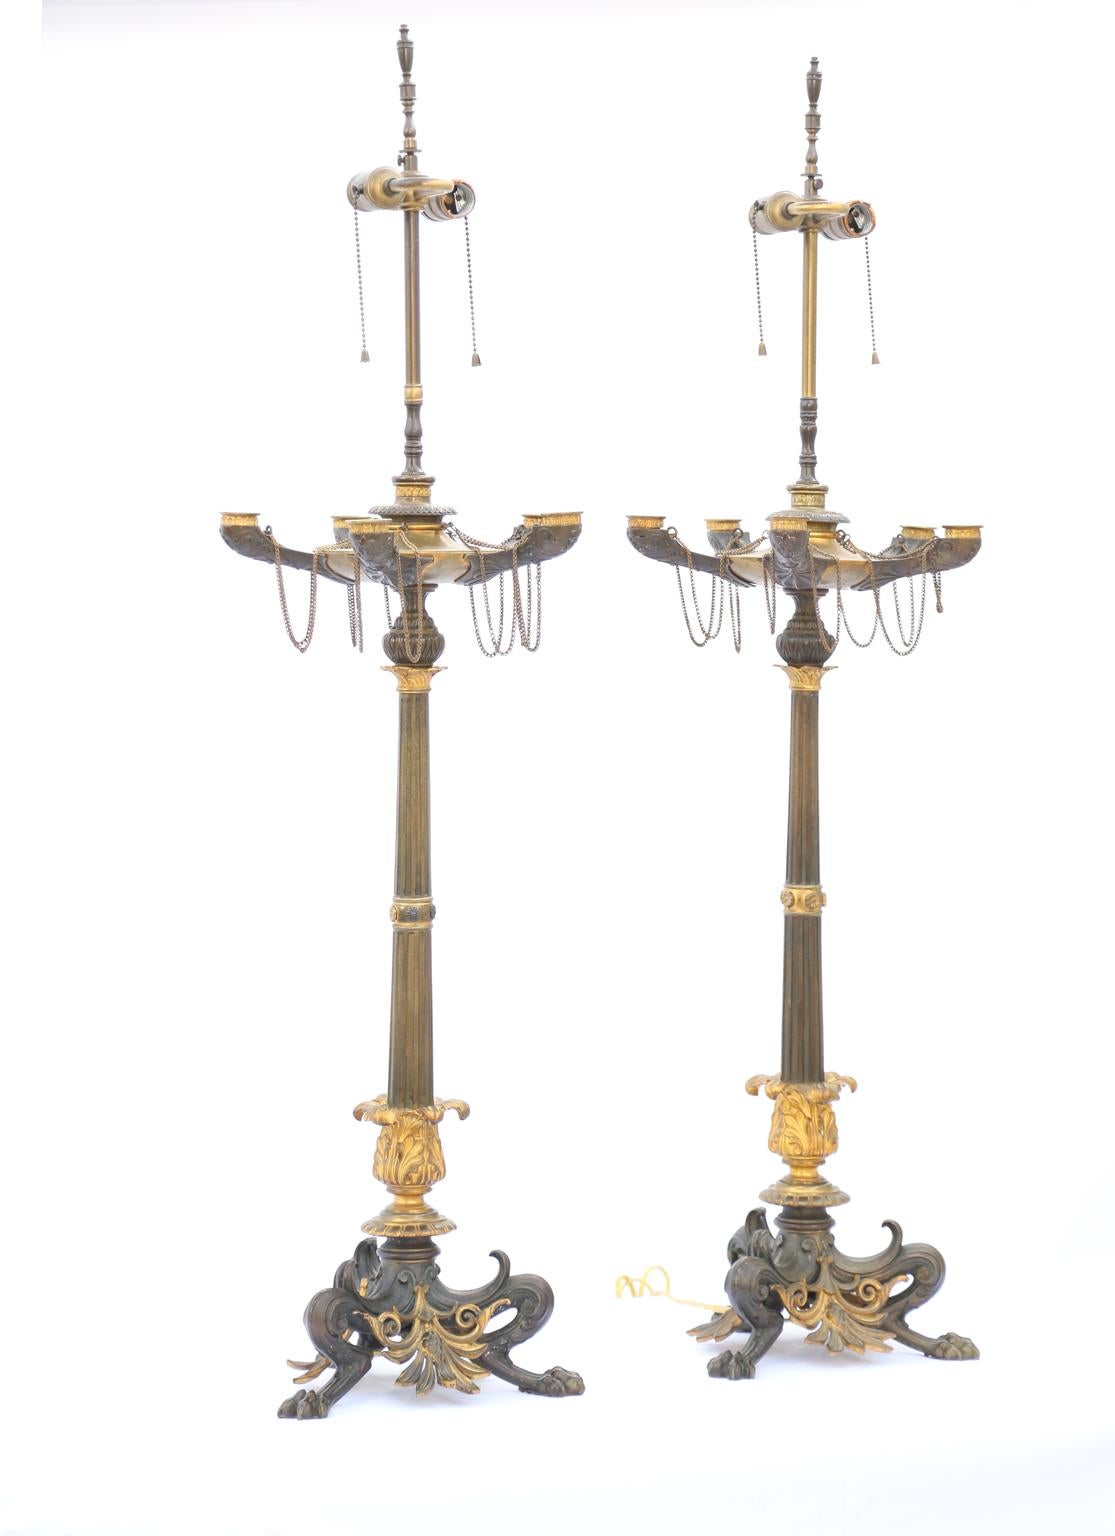 Paire de candélabres à lampes, attribuée à Ferdinand Barbedienne, finement moulée en bronze patiné et doré ; présentant une triple base en forme de pied de biche avec des pattes de pad, décorée de palmettes percées, surmontée d'une colonne cannelée,